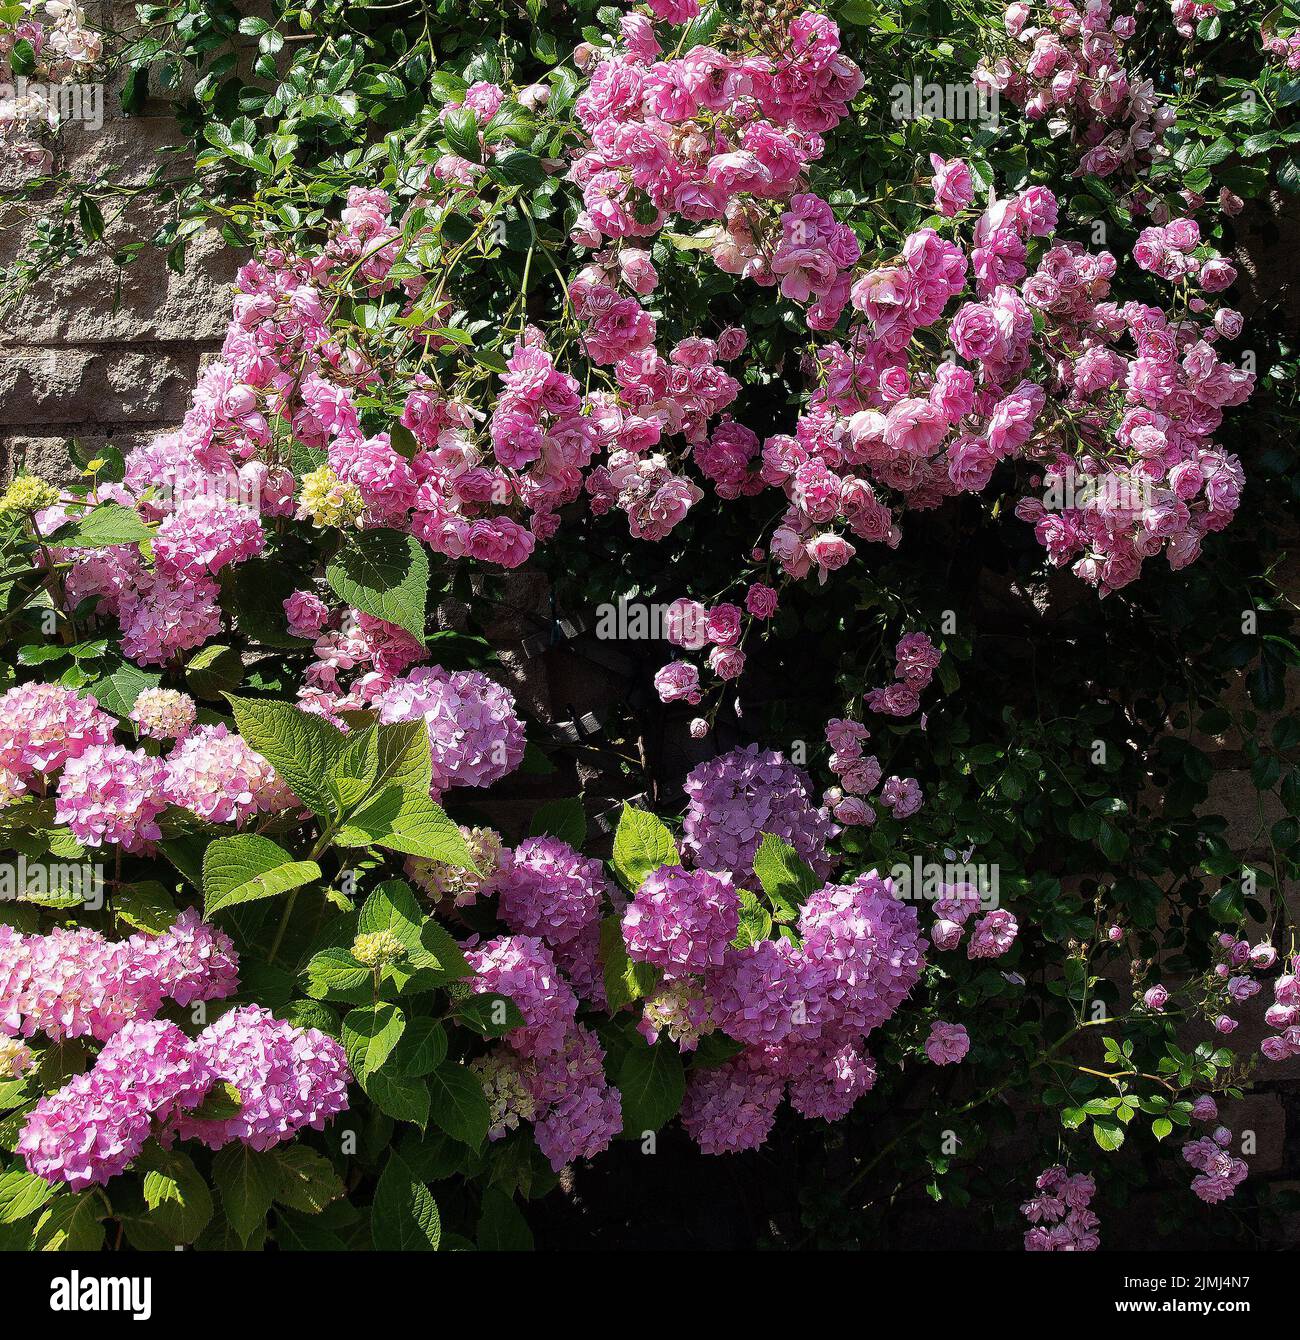 La rose rambleuse 'Super Fairy' s'est associée ici à des ours d'hortensia rose, de petites fleurs entièrement doubles, de couleur rose moyenne, en grande abondance tout au long de l'été. T Banque D'Images